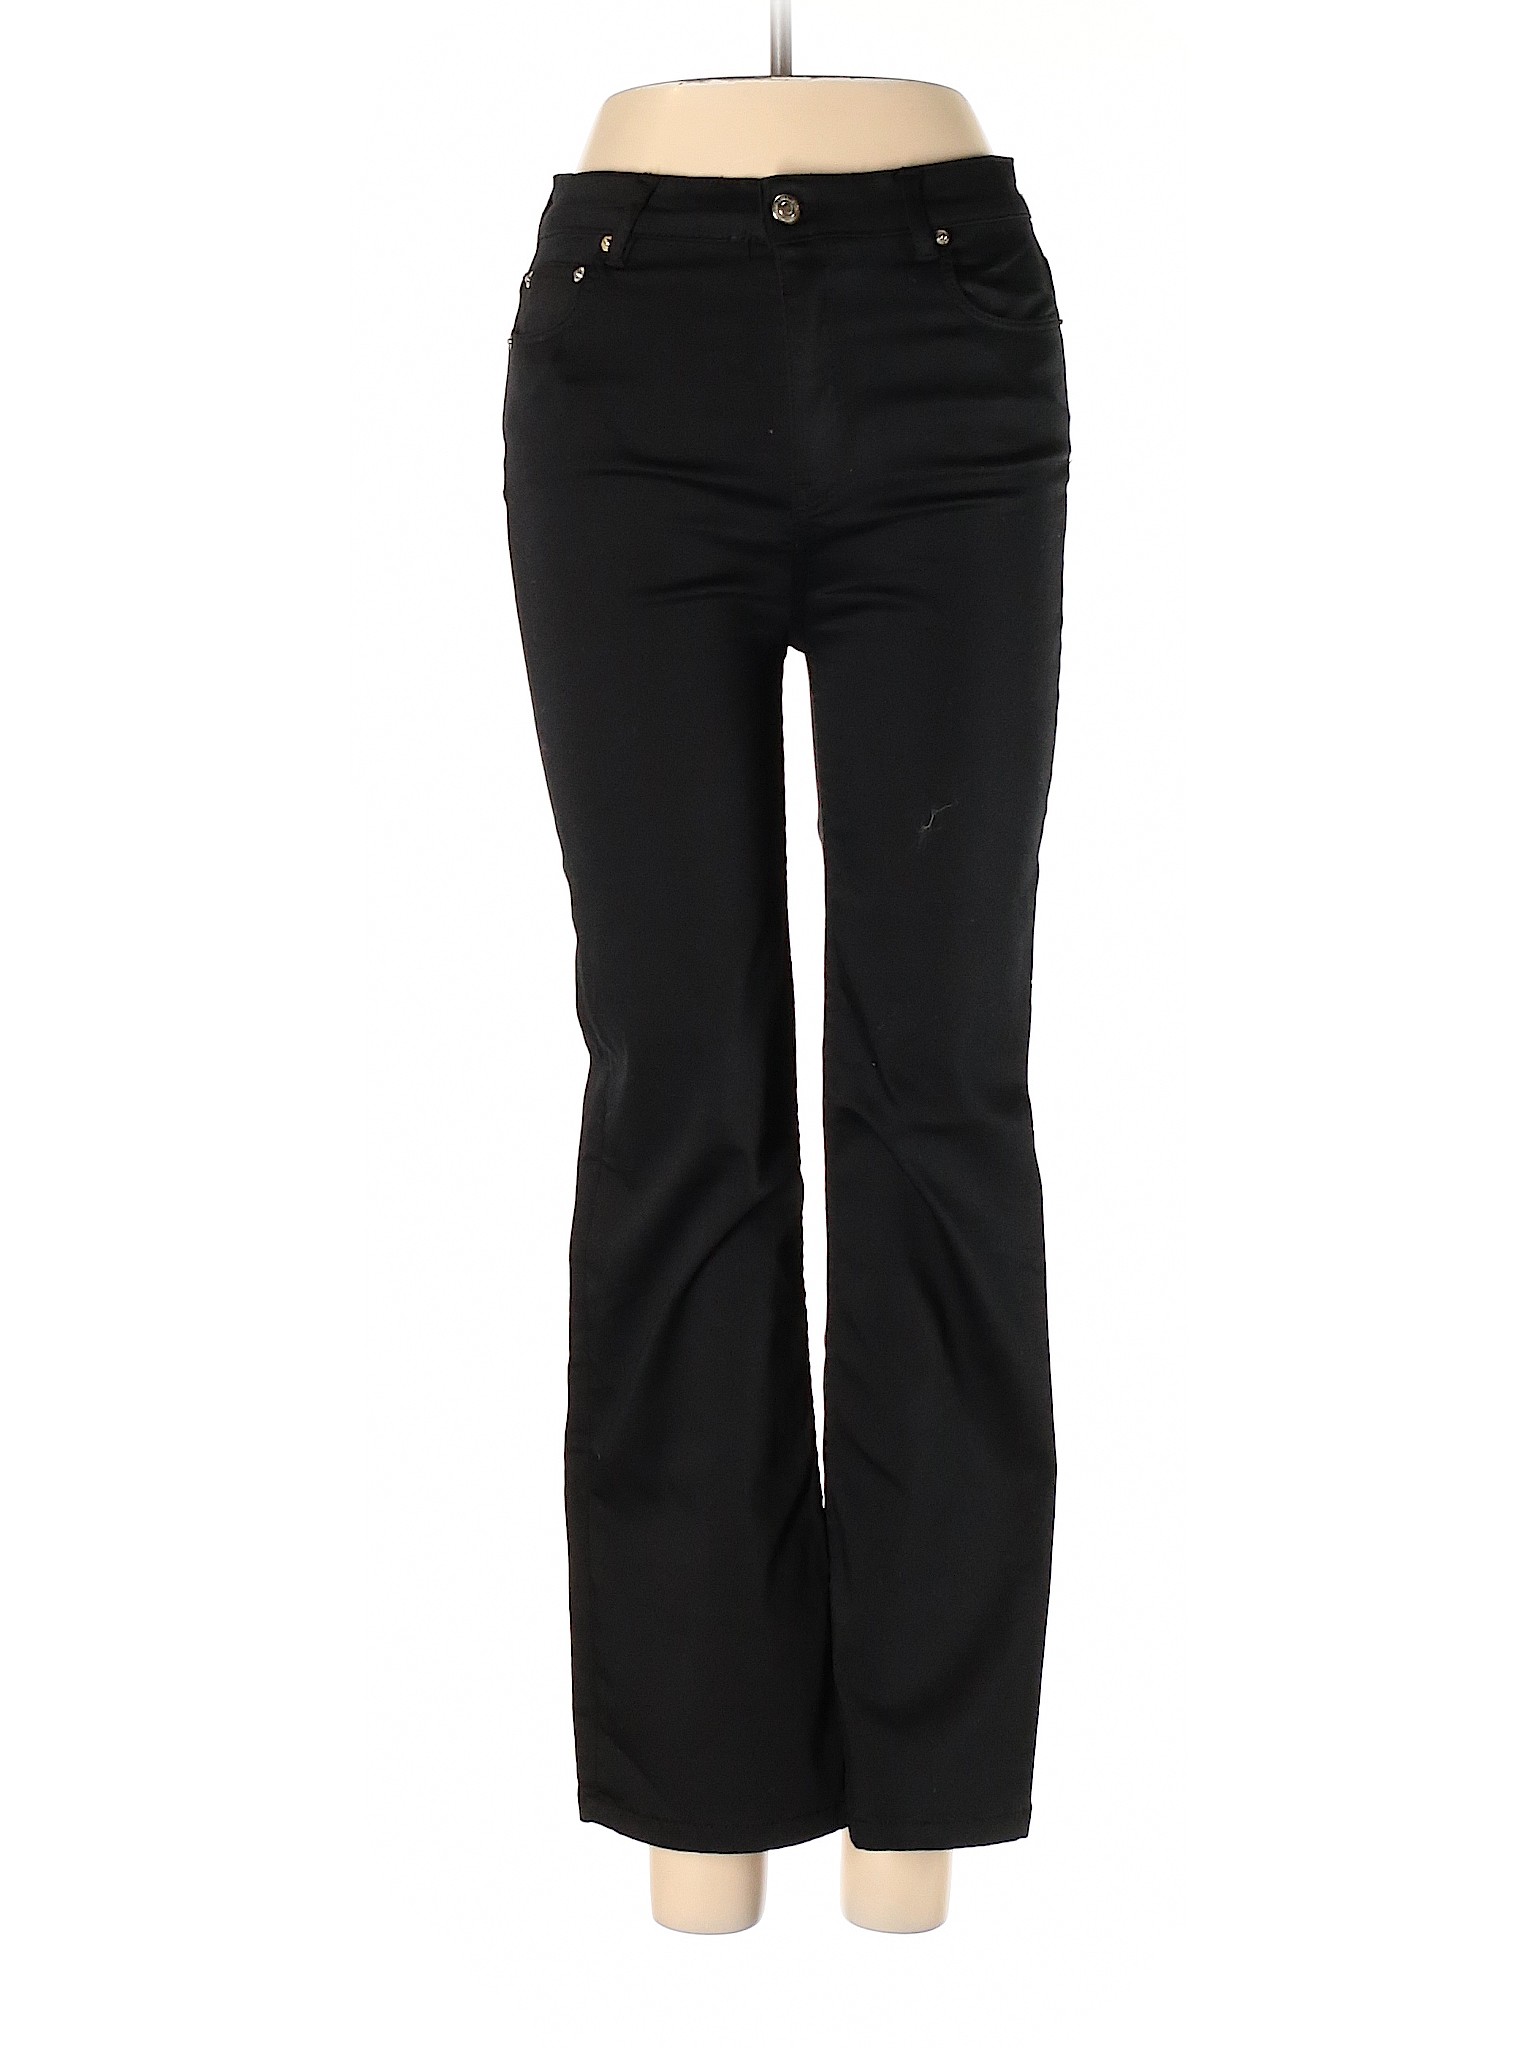 Zara Women Black Jeans 4 | eBay